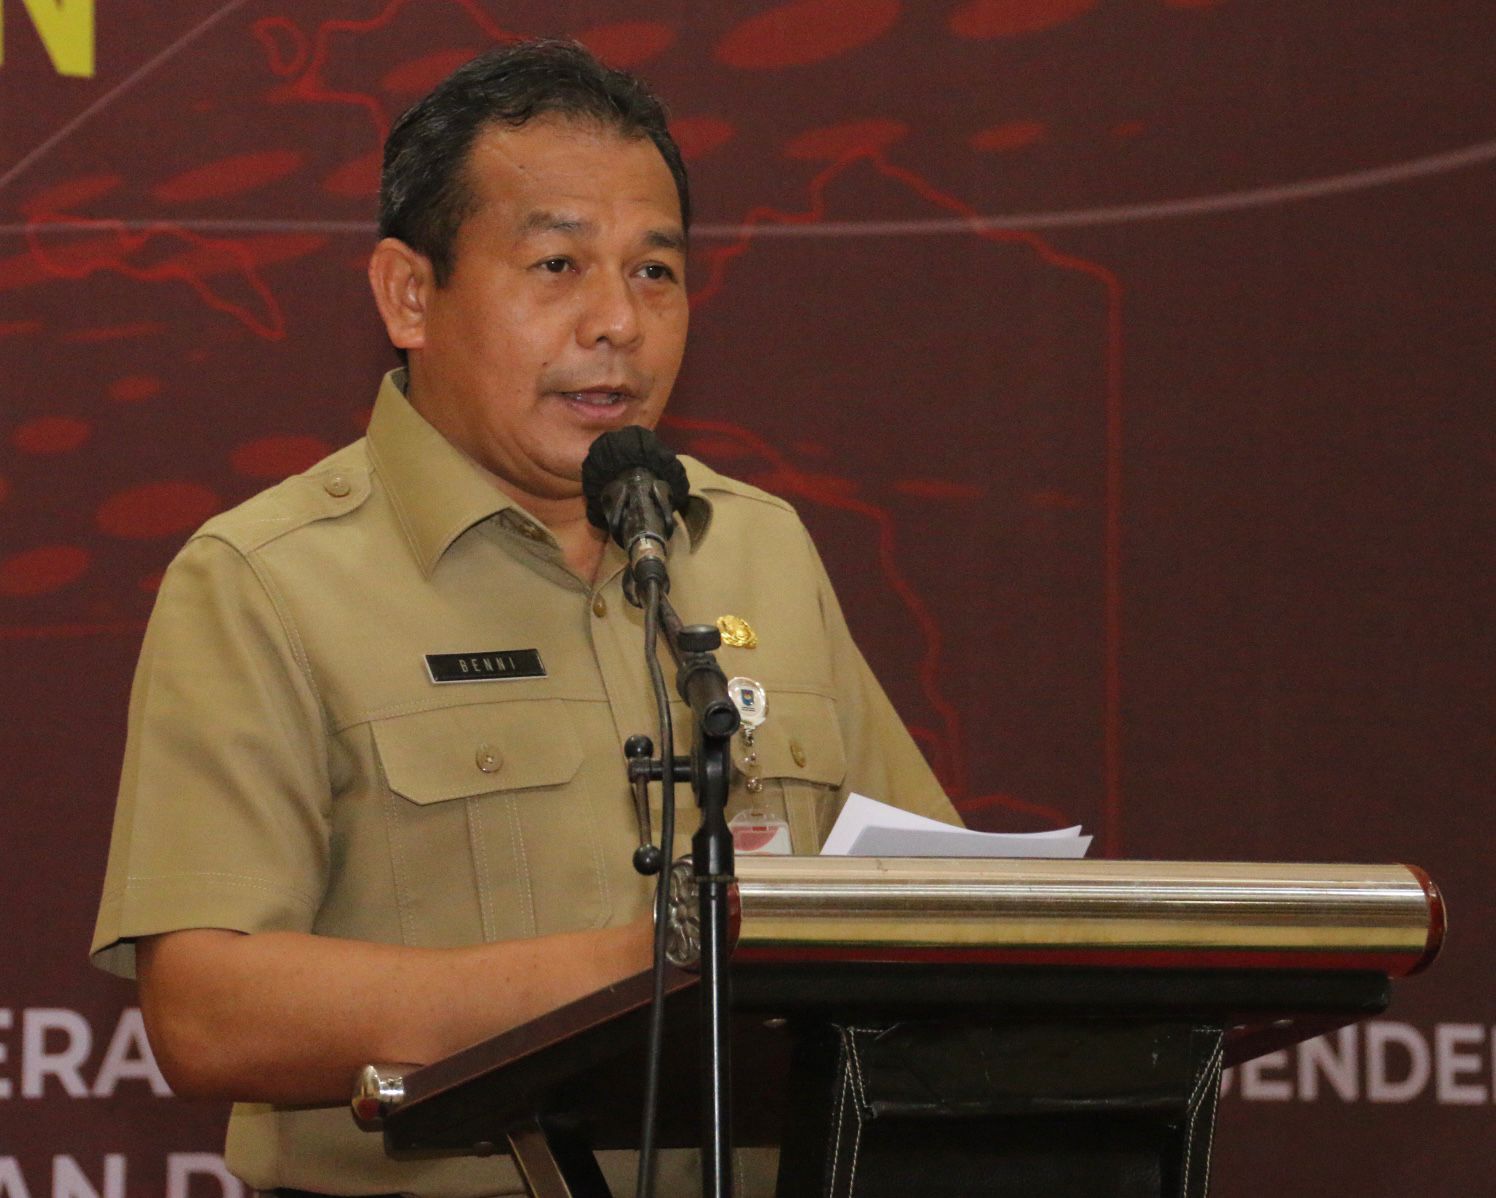  Tegas! Ini Pernyataan Kemendagri Soal Jabatan Gubernur Lampung